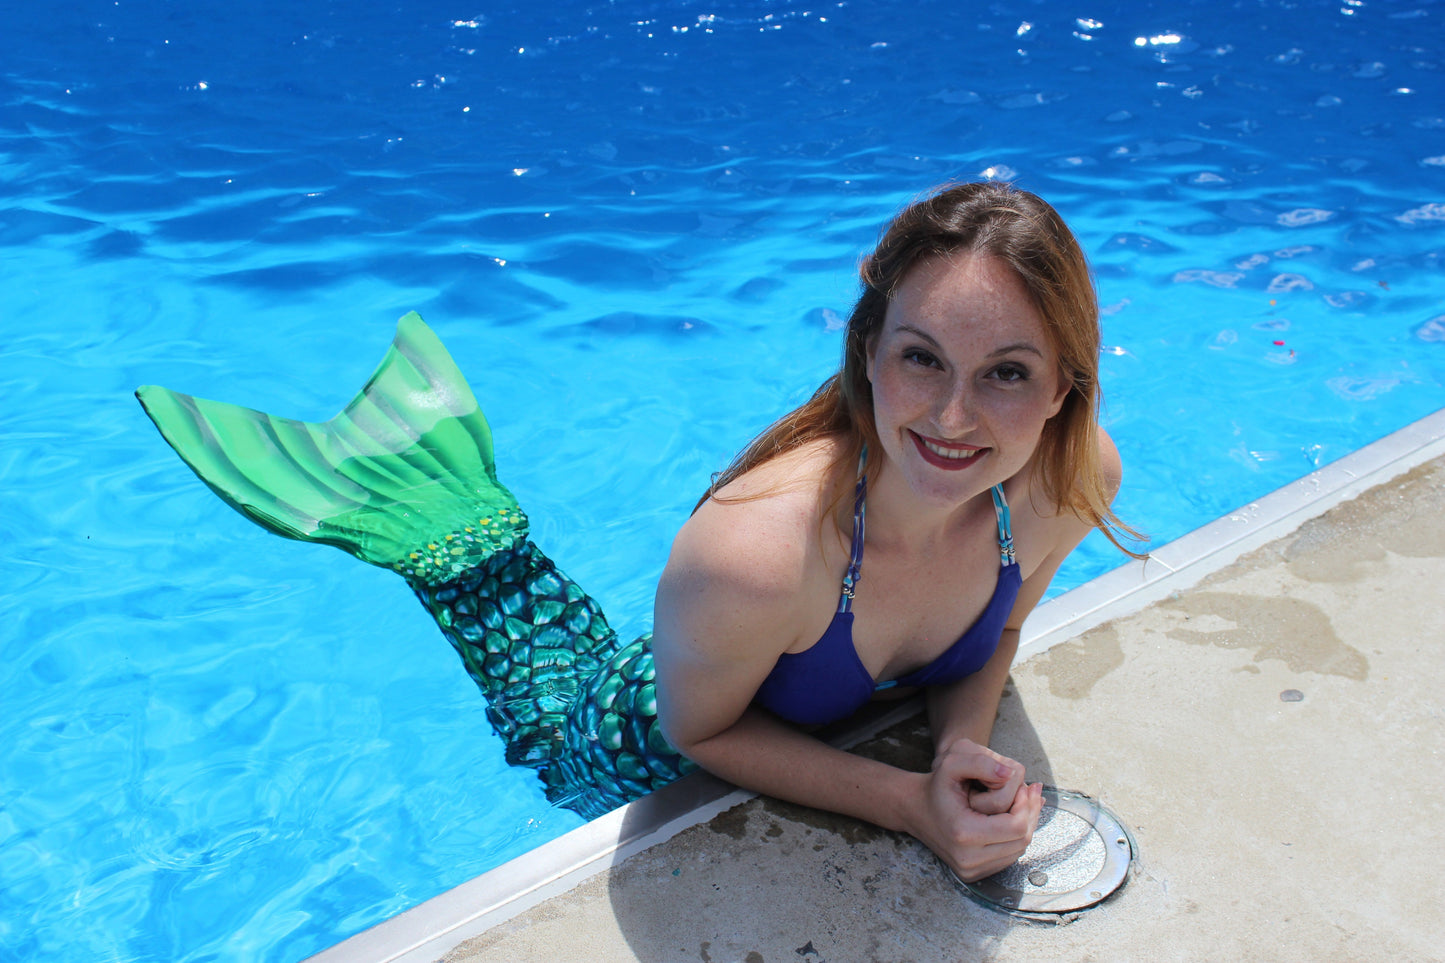 Cours de natation Megafest Mermaid pour ENFANTS et ADULTES - du 25 au 28 mai